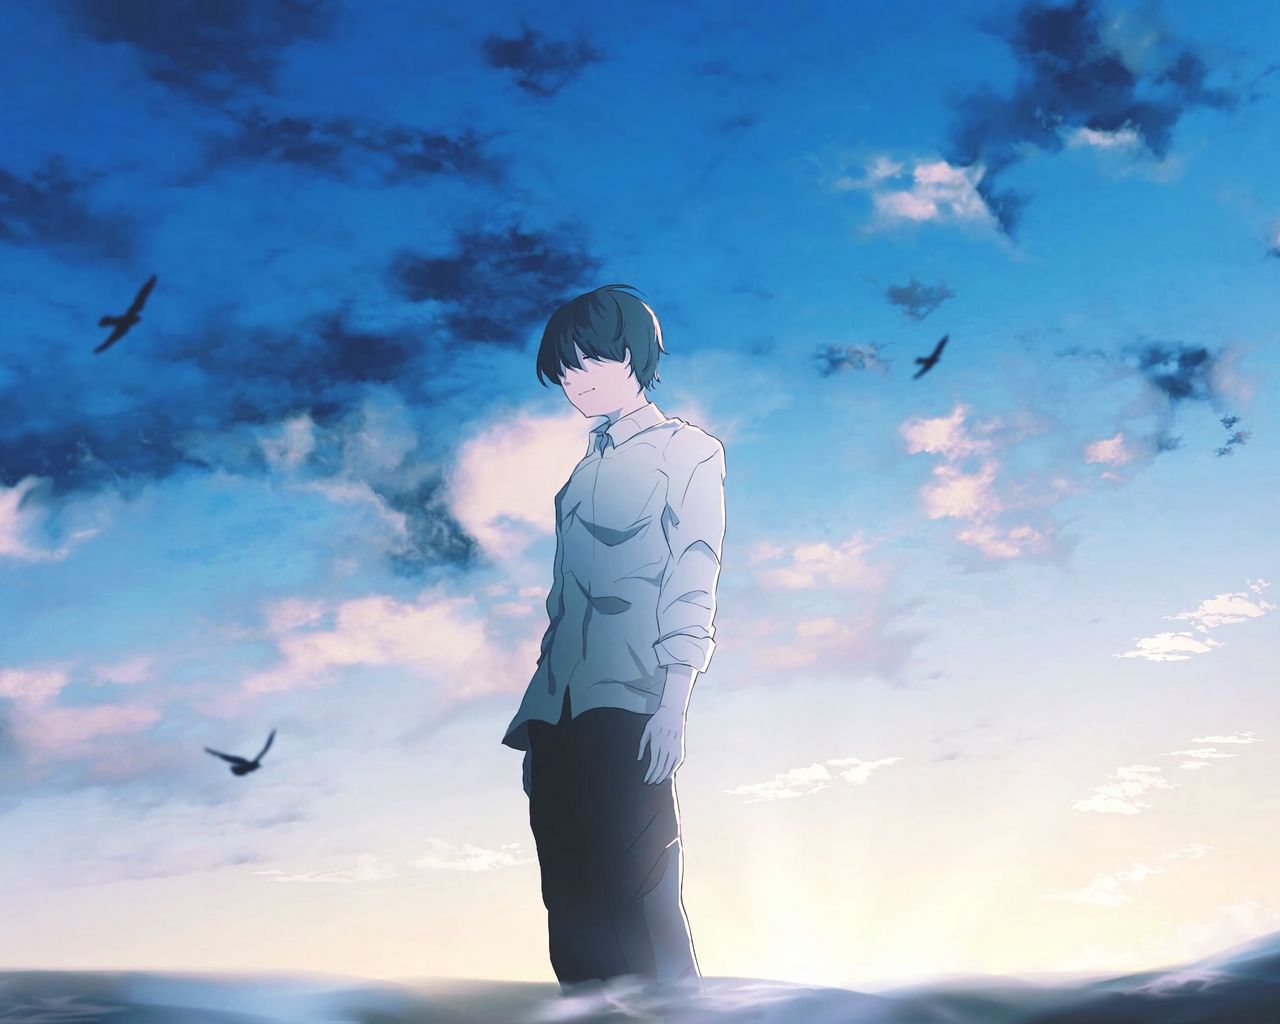 Tận hưởng hình ảnh nghệ thuật Anime tuyệt đẹp về chàng trai đơn độc, nhưng lại toả sáng với nghị lực và tình yêu đời.